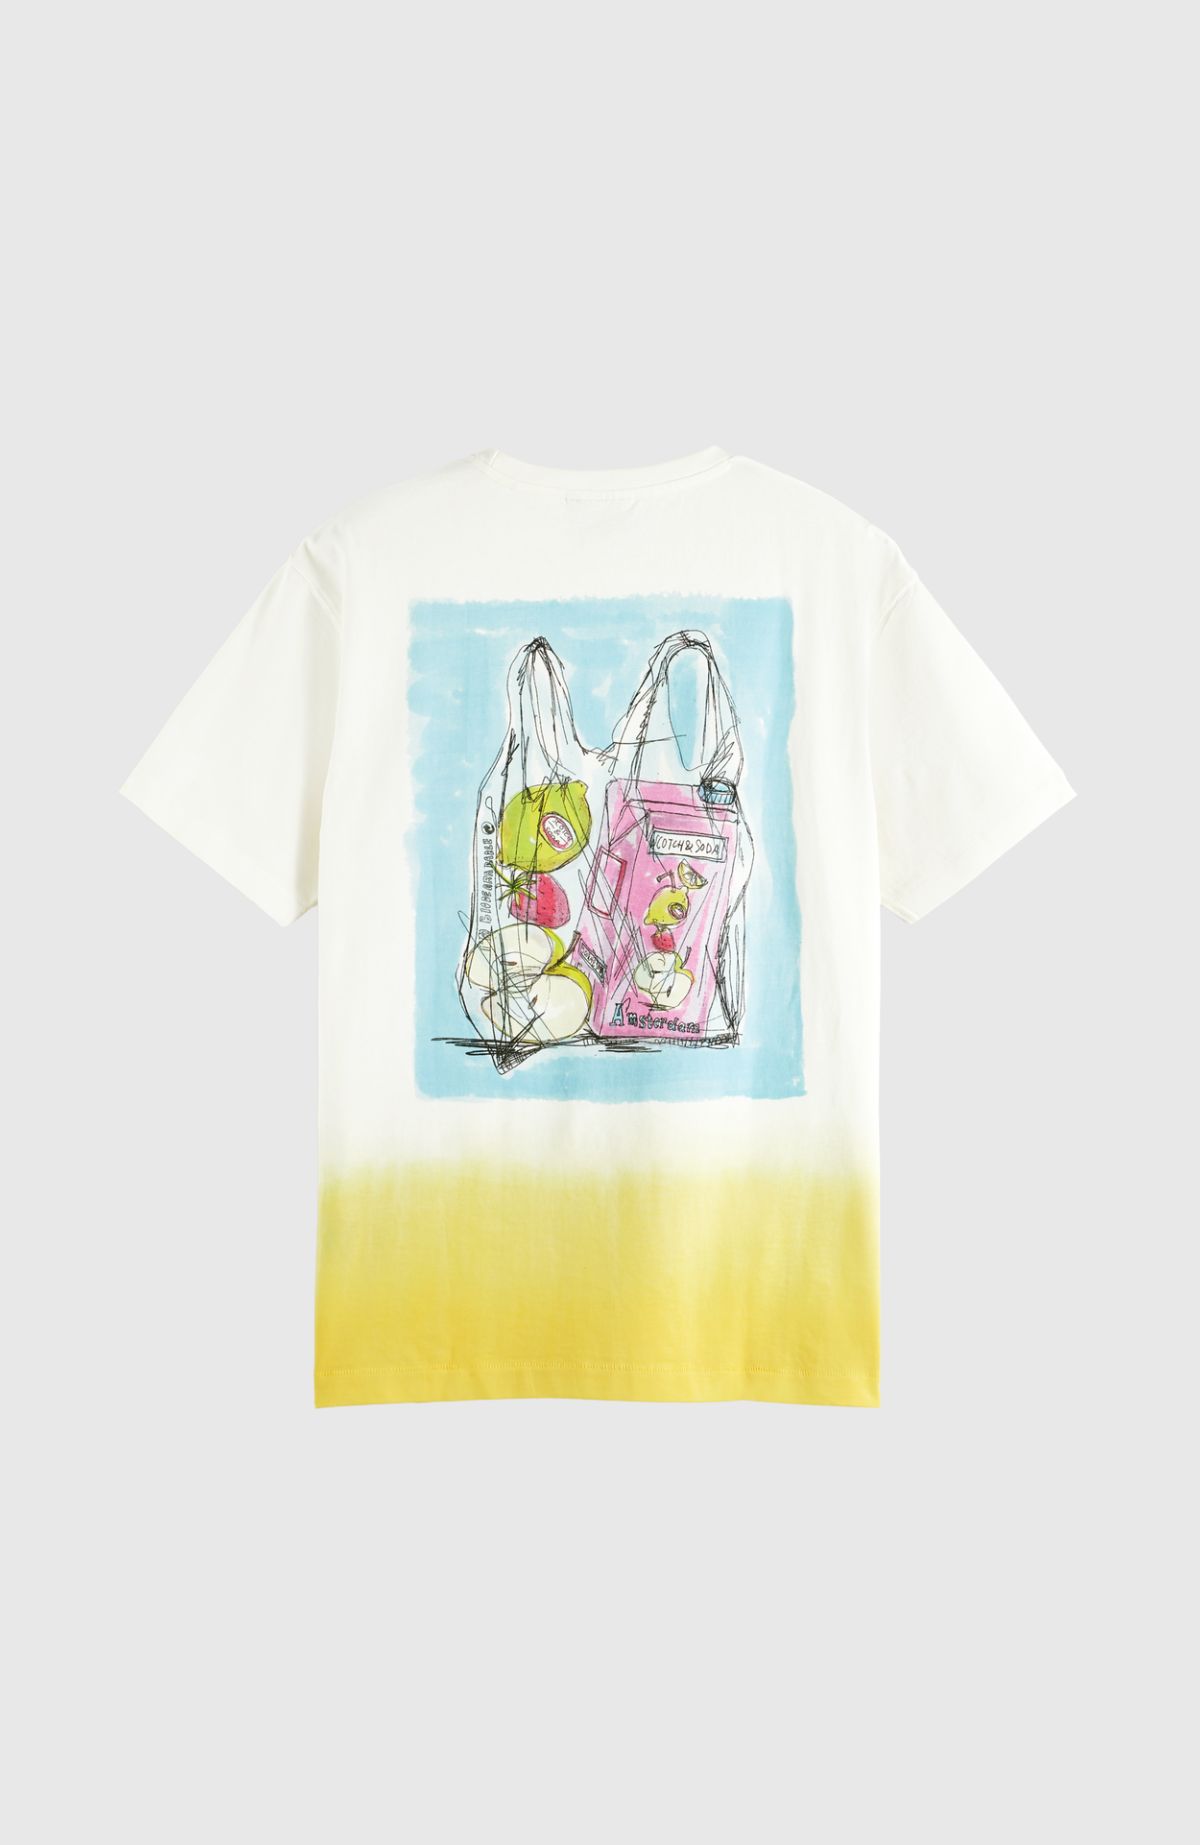 Dip-Dyed Summer artwork T-shirt